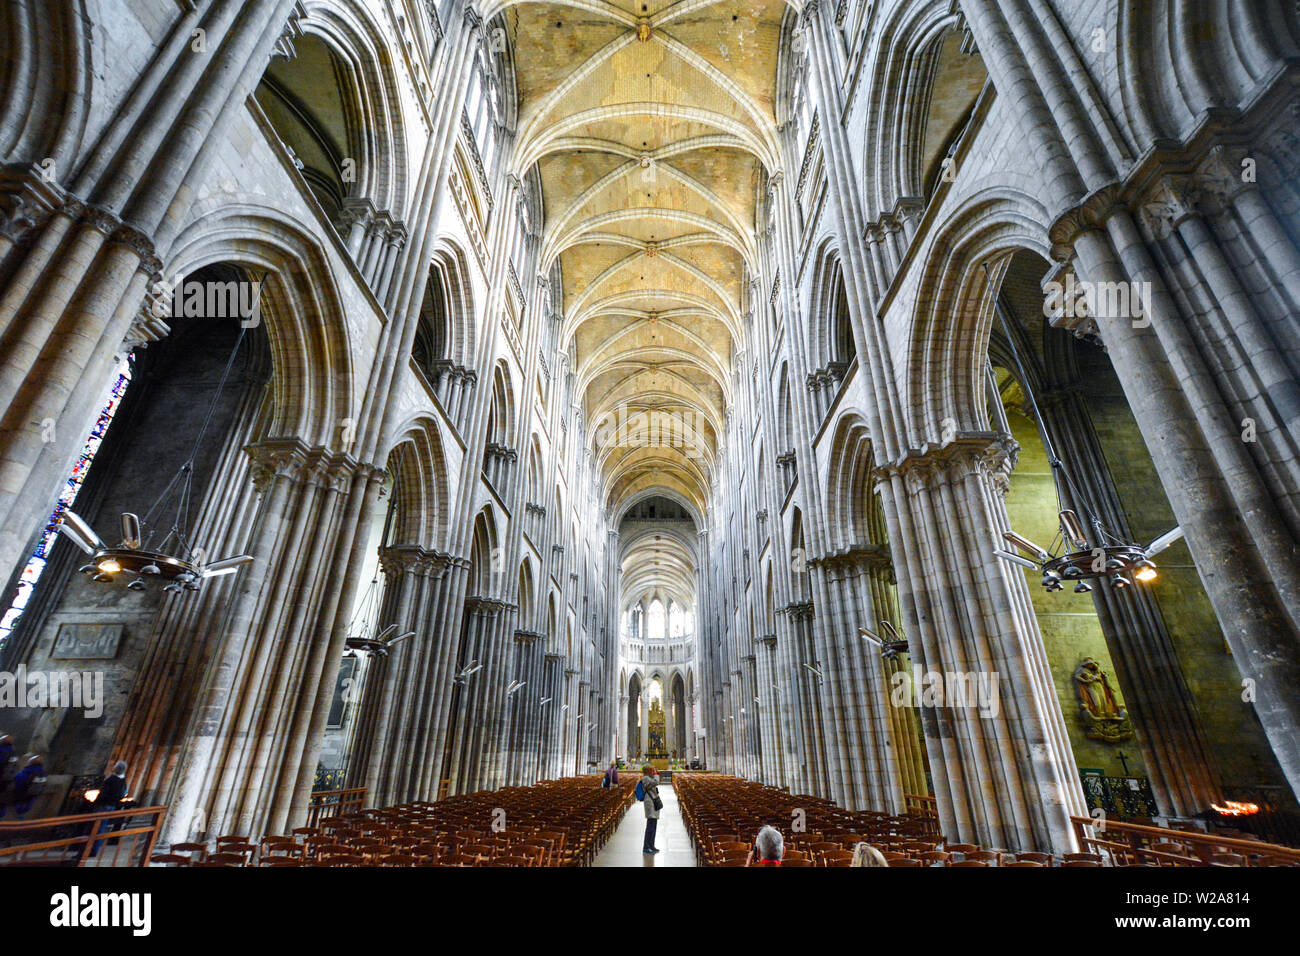 Turistas que toman fotos y sentarse en los bancos y la nave central de la Catedral de Rouen, Francia Foto de stock